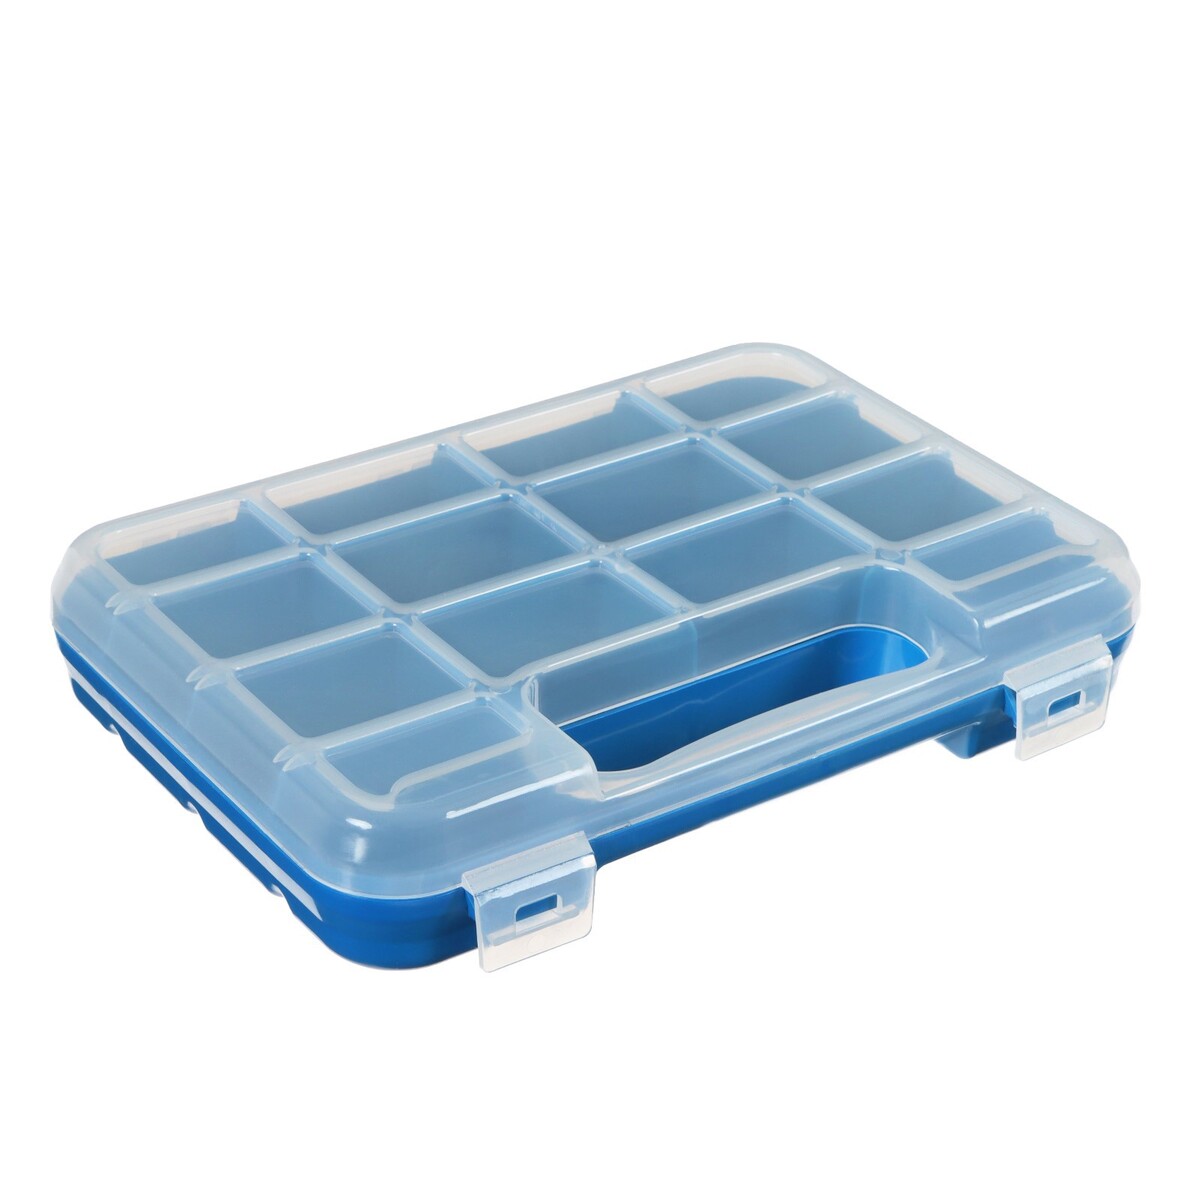 Коробка для рыболовных мелочей к-14, пластмасса, 23.5 х 16 х 4.5 см, синяя кубики методики зайцева собранные синяя коробка картон